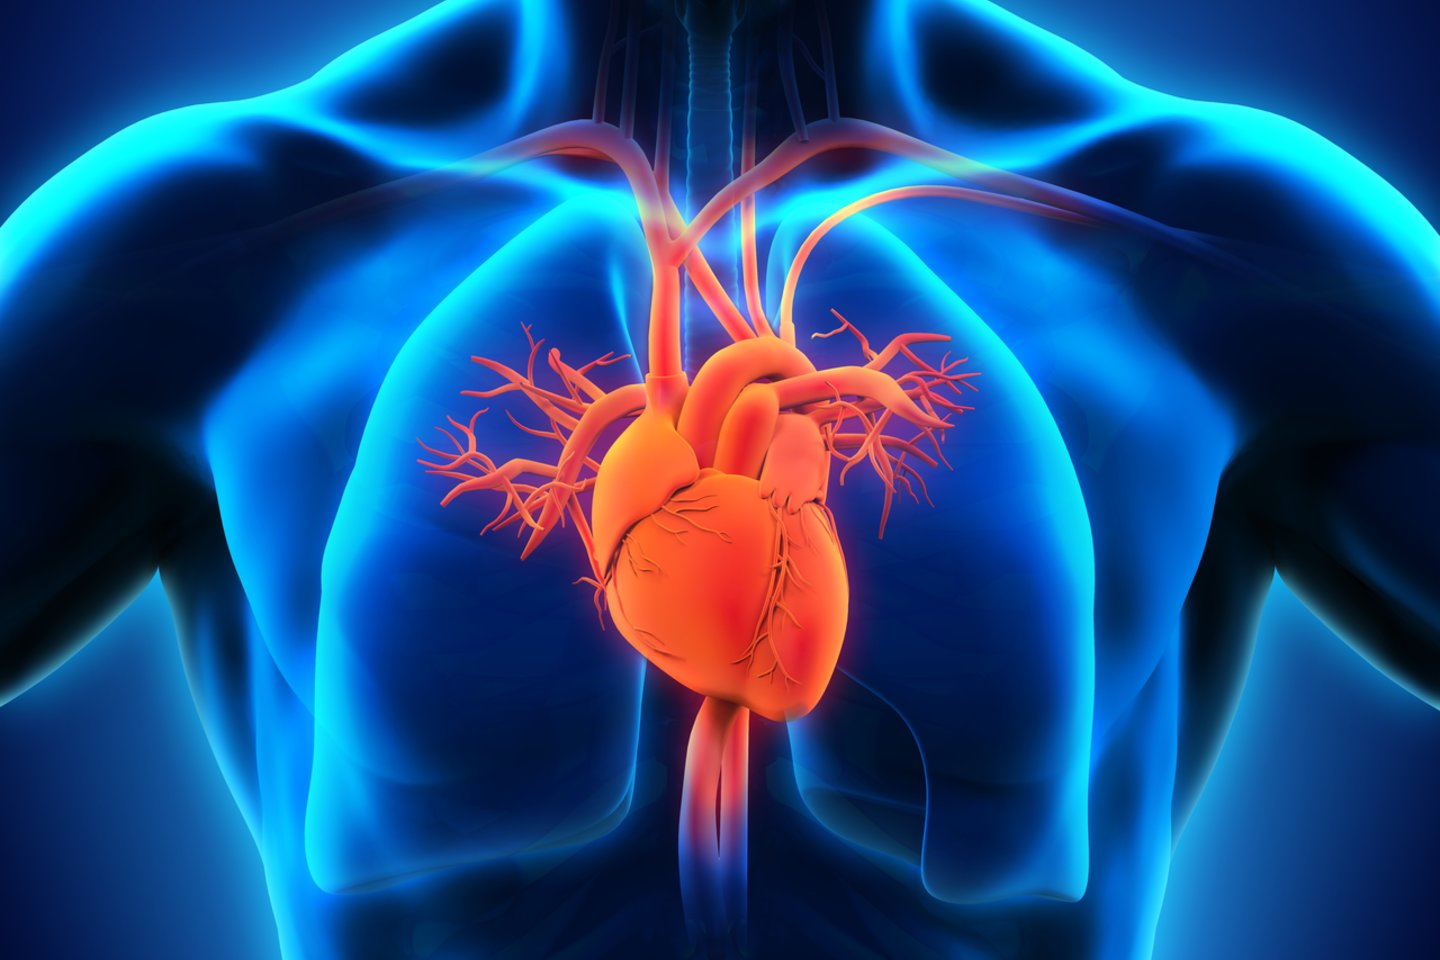  Sveikatos mokymo ir ligų prevencijos centras primena, jog rugsėjo 29-ąją Pasaulinės širdies federacijos iniciatyva minima Pasaulinė širdies diena.  <br>123rf nuotr.